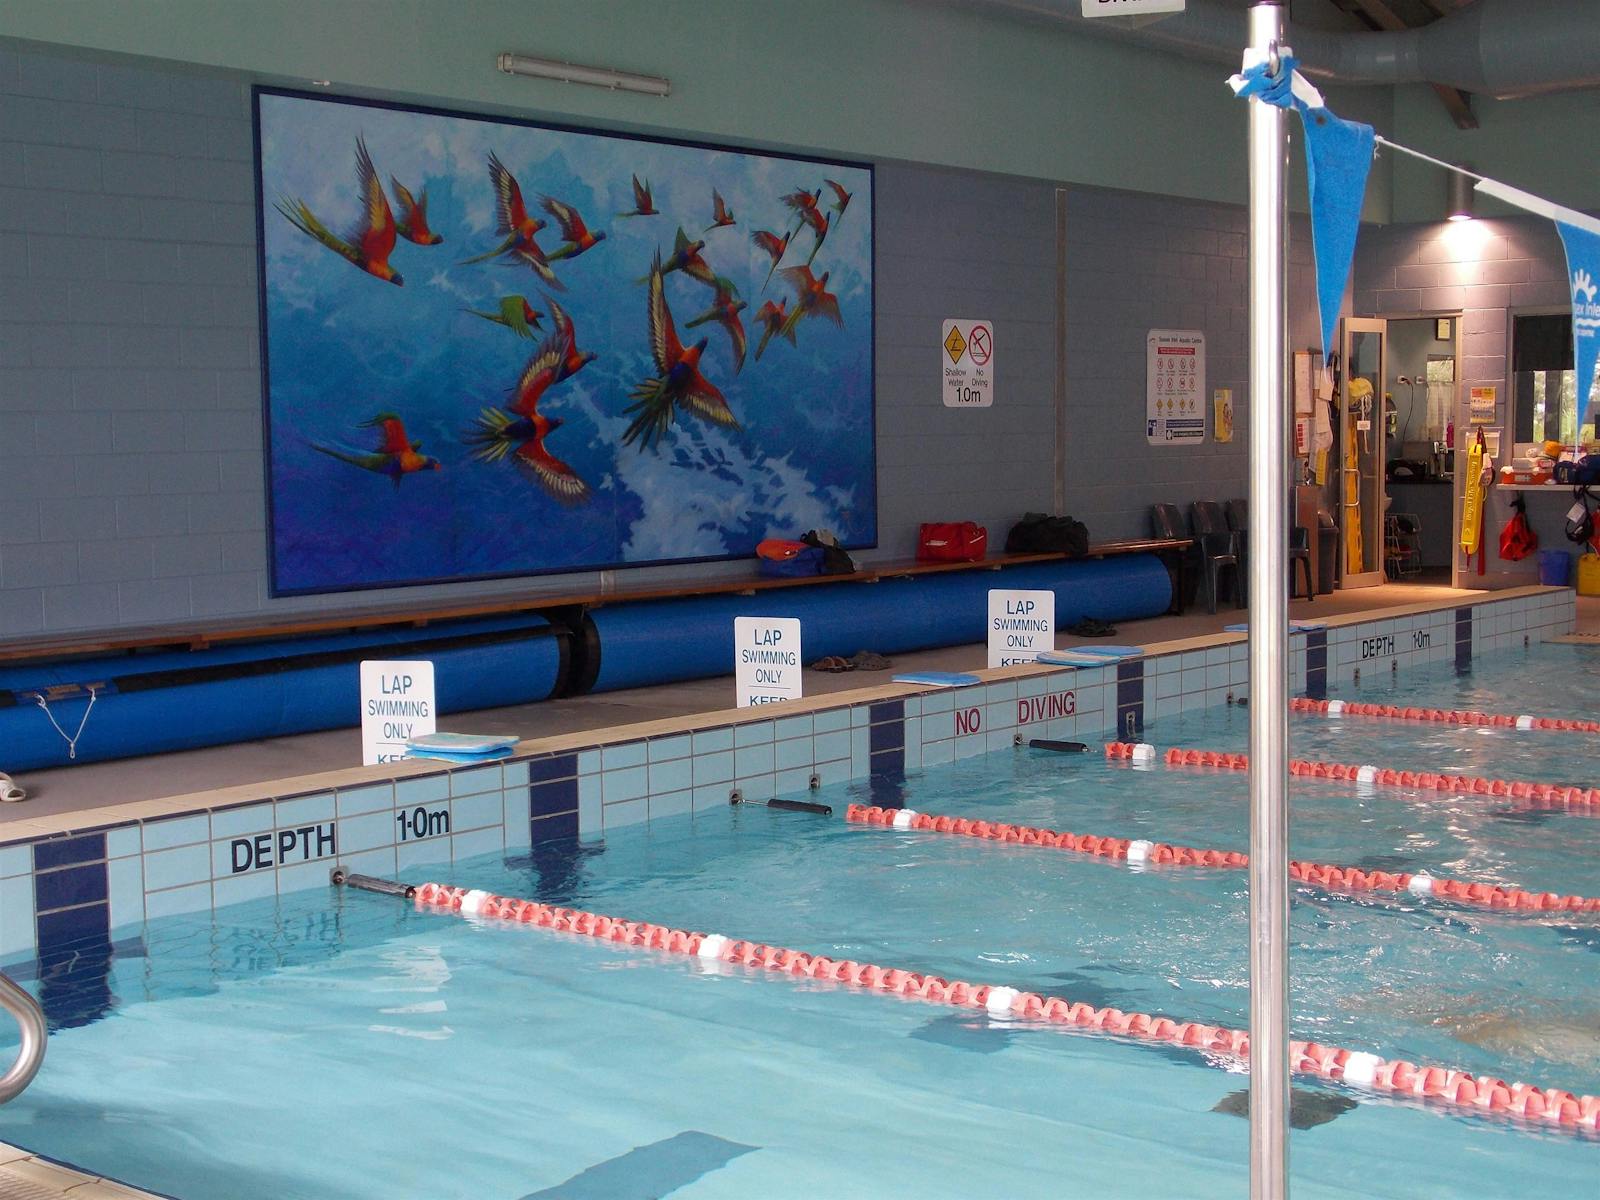 Sussex Inlet Aquatic Centre